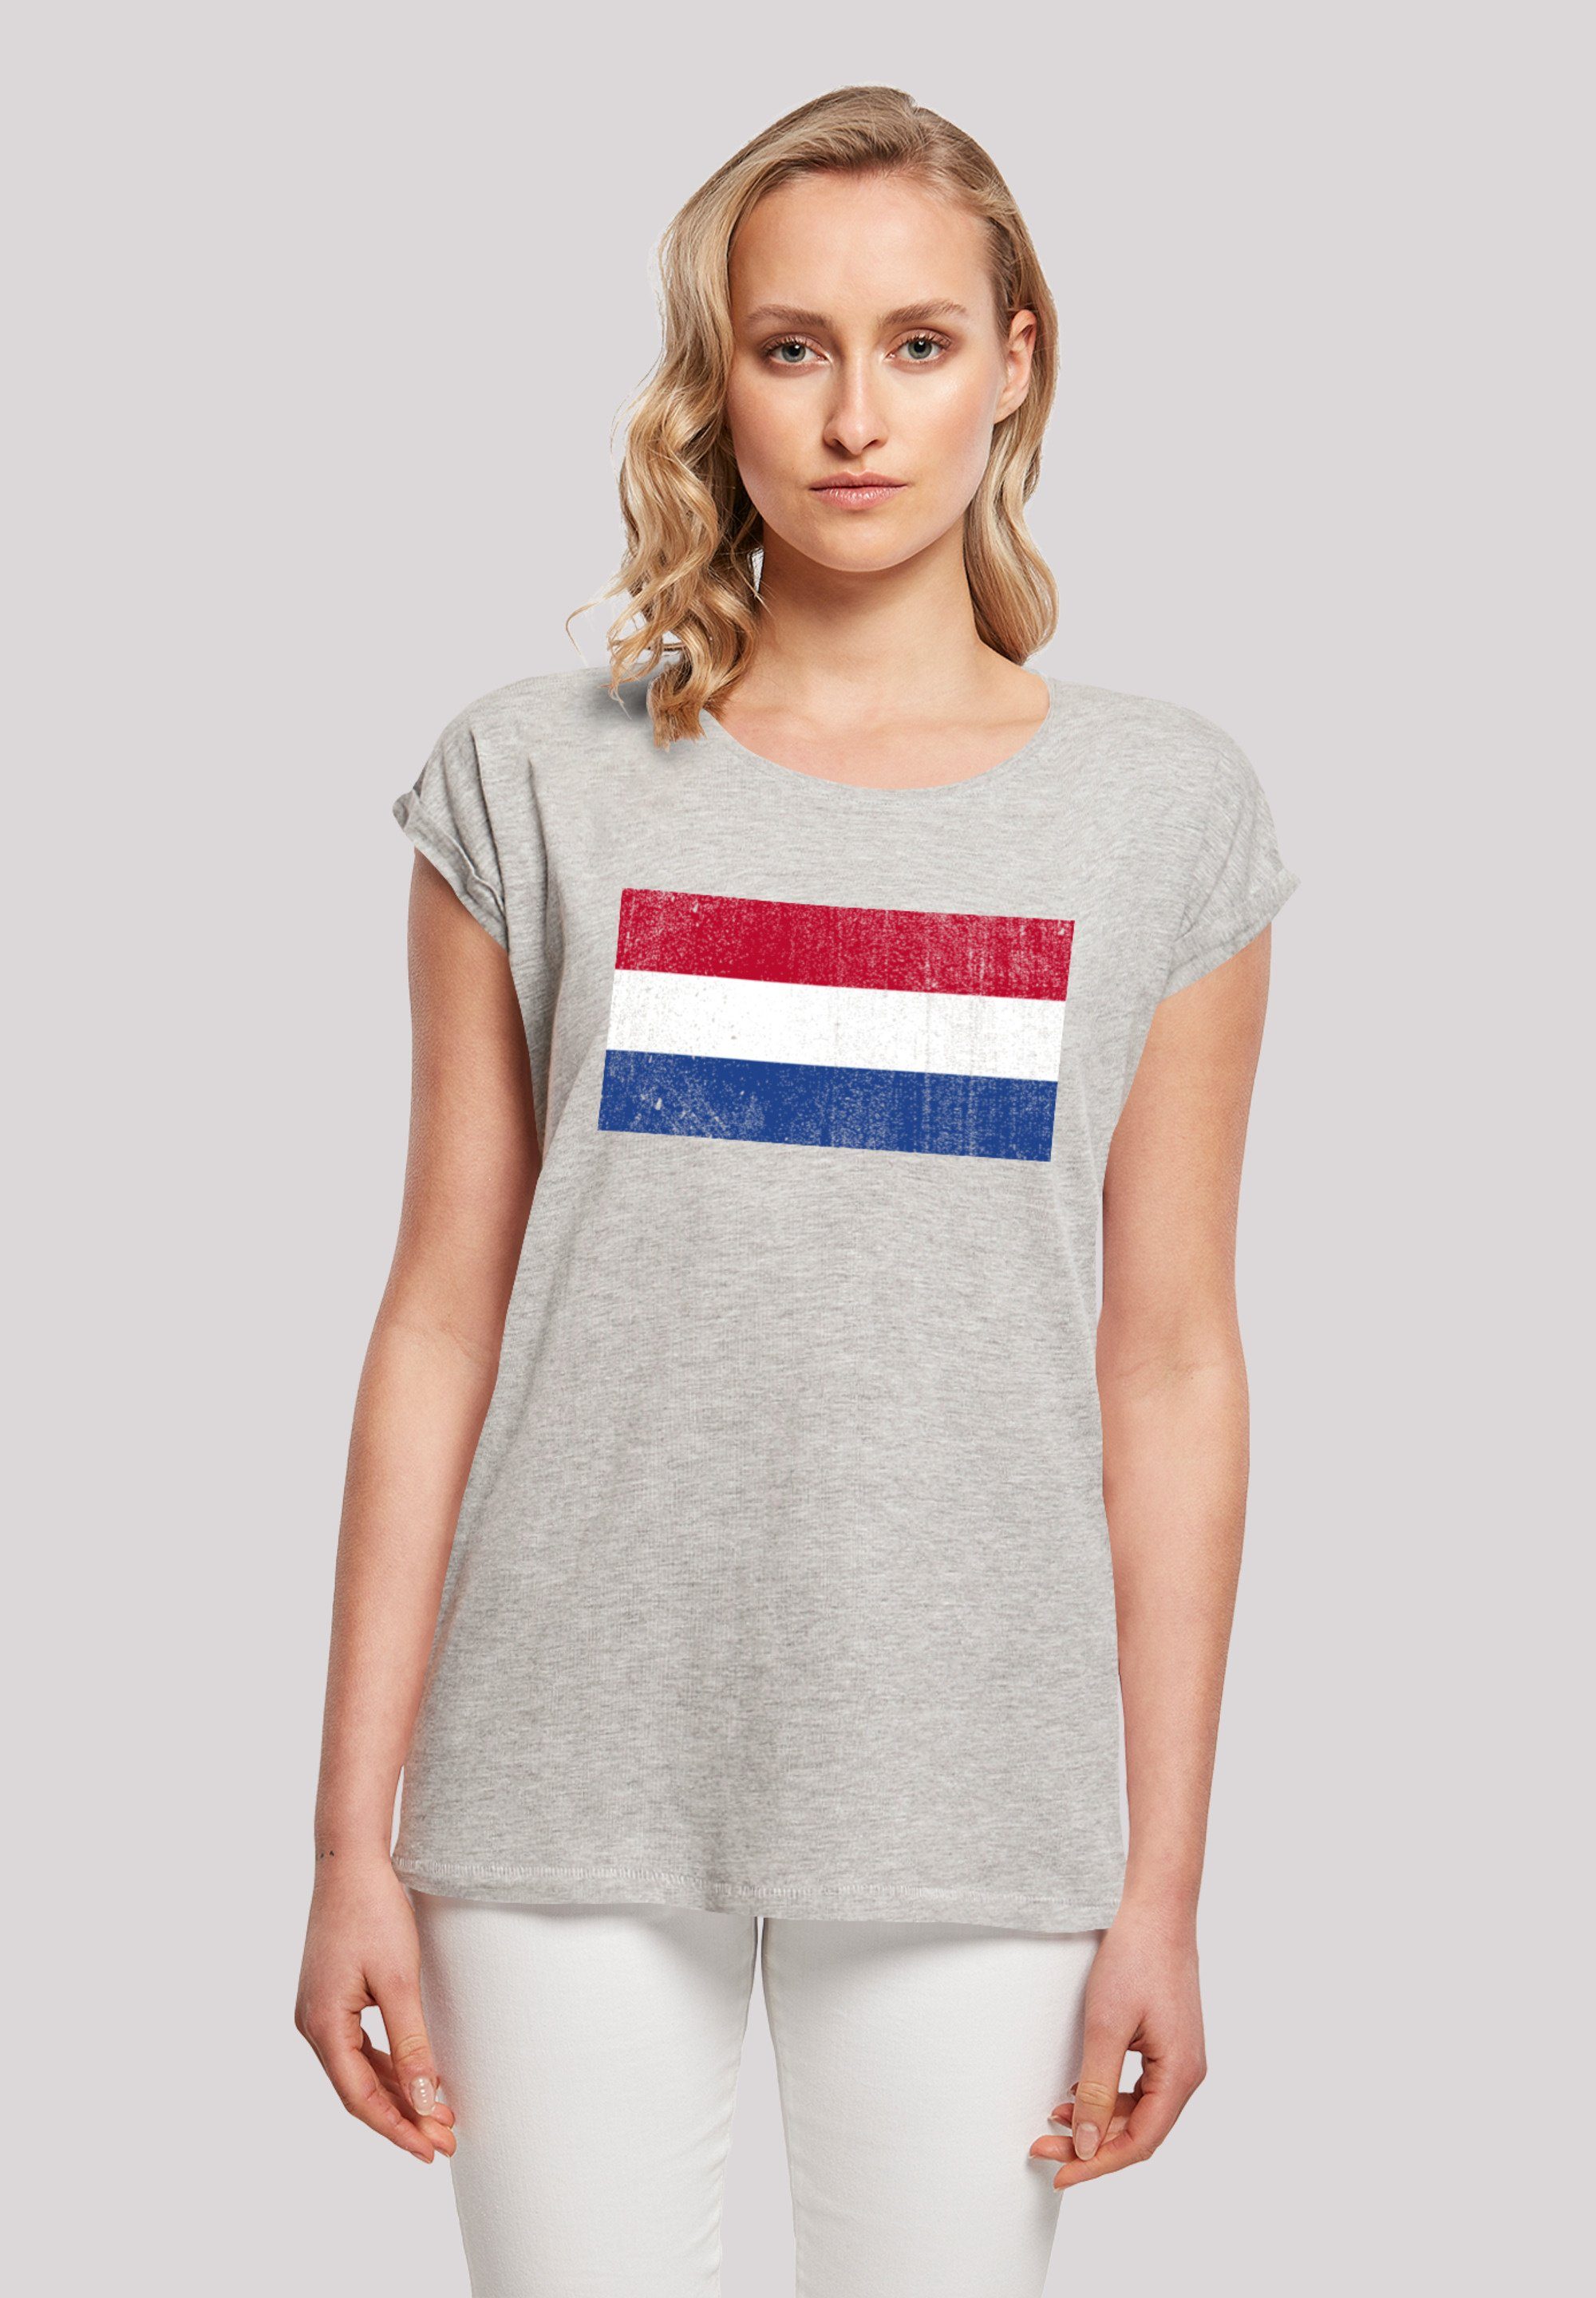 F4NT4STIC T-Shirt Netherlands NIederlande Holland Flagge distressed Print,  Das Model ist 170 cm groß und trägt Größe M